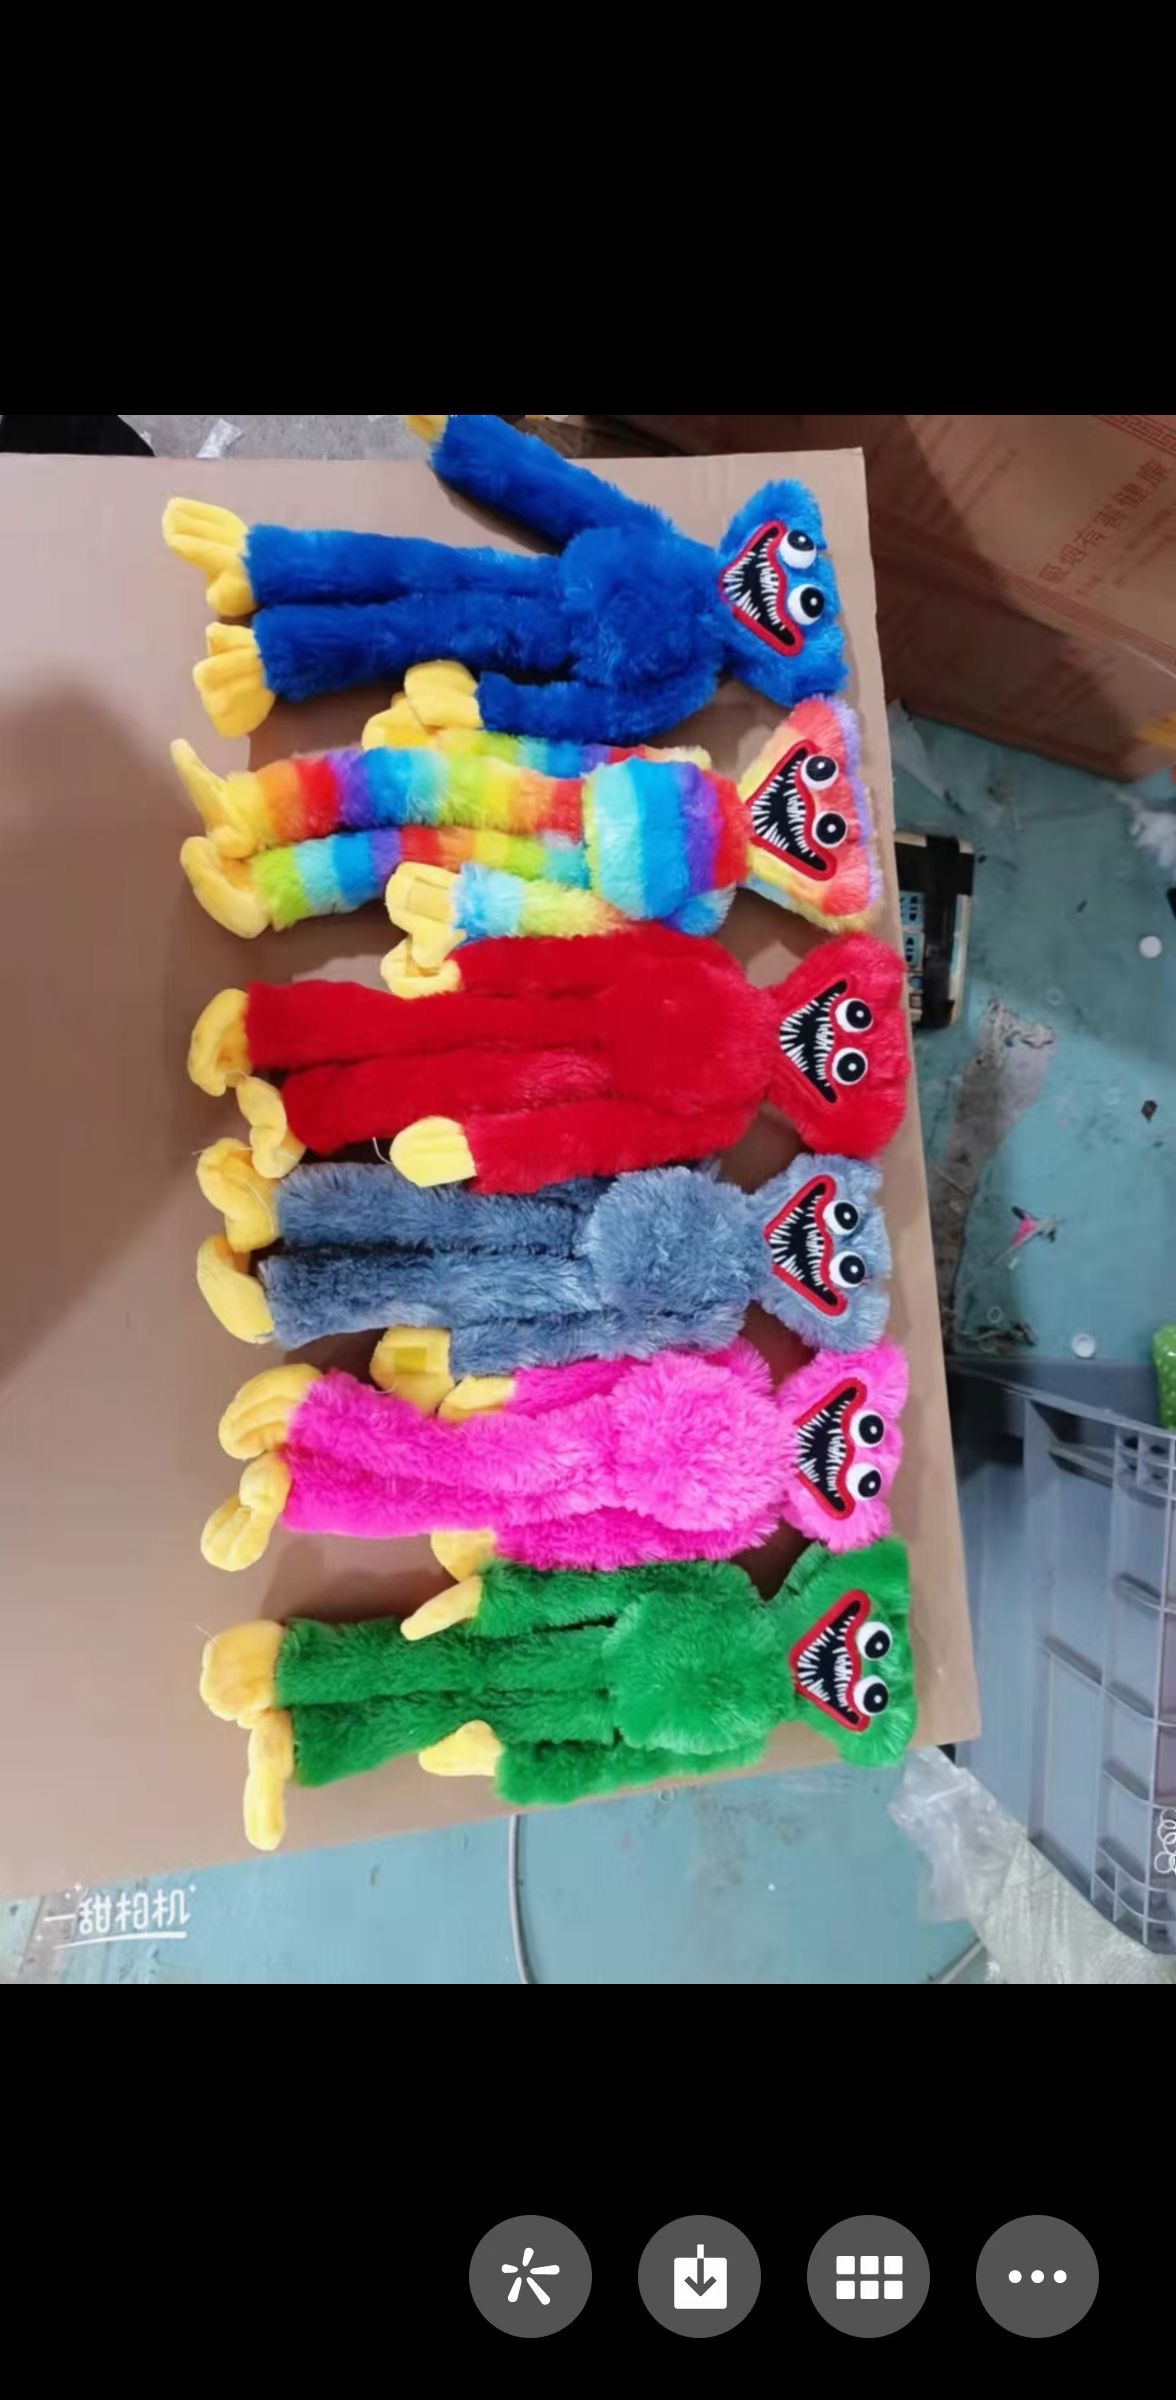 新款毛绒儿童玩具毛绒彩虹色波比公仔40厘米60厘米大量现货供应详情5